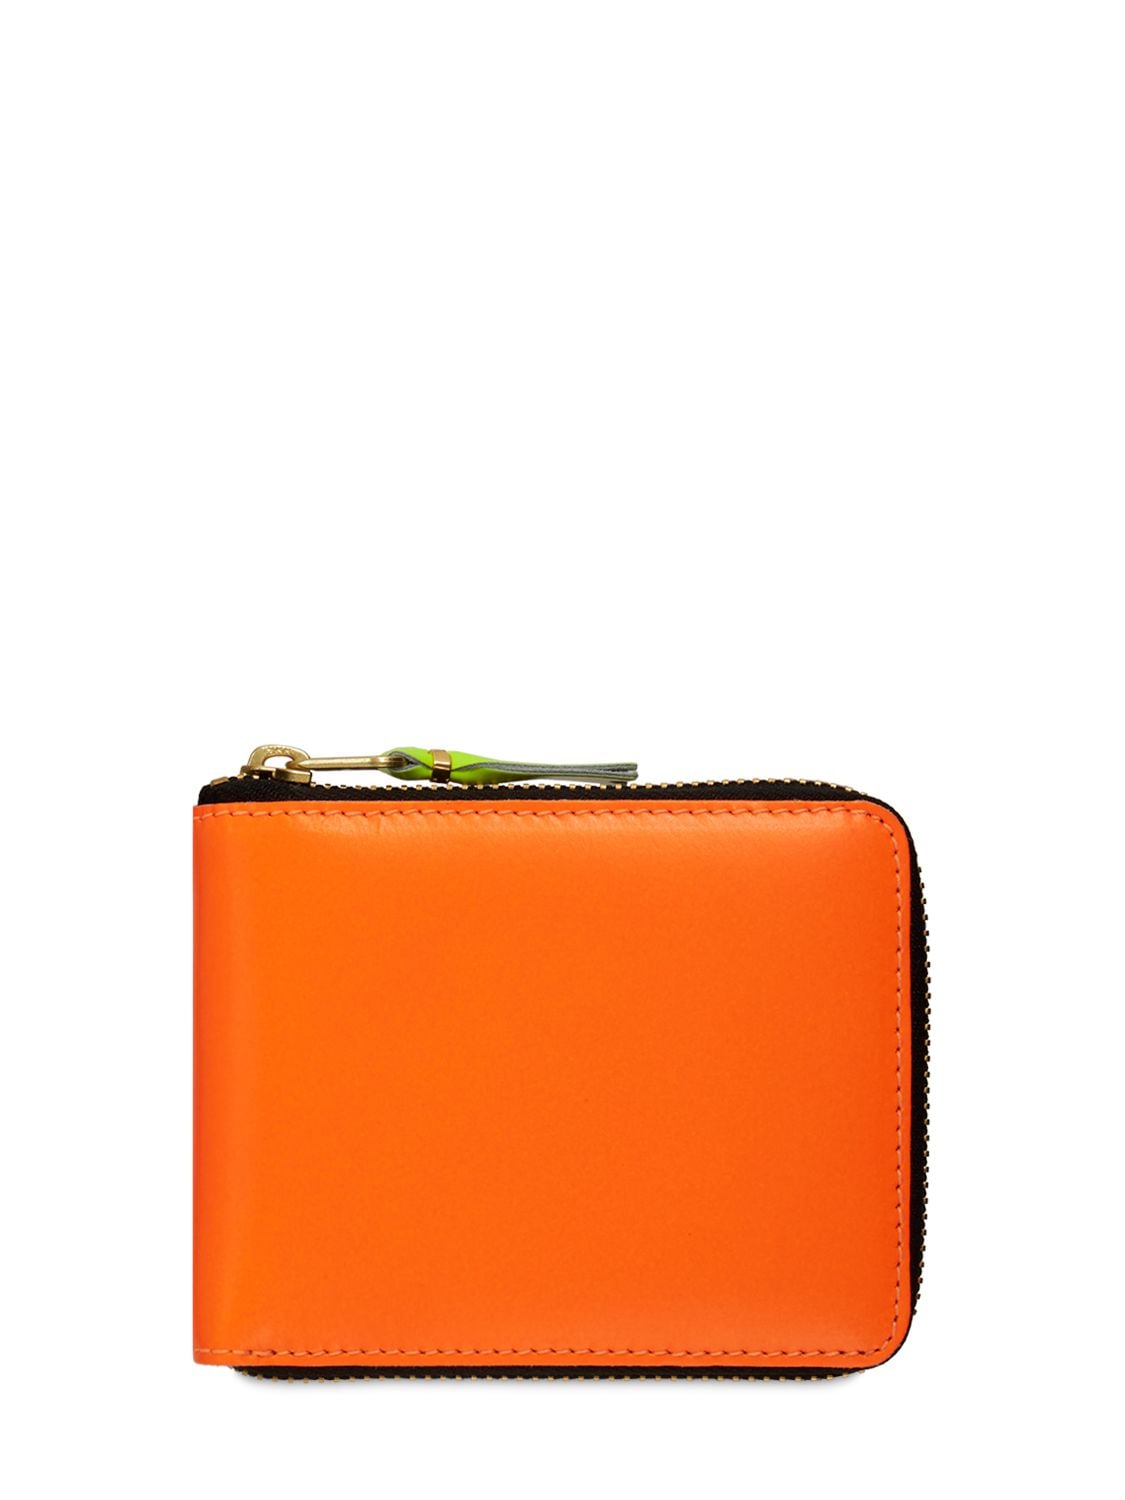 Comme Des Garçons Super Fluo Leather Zip-around Wallet In Orange